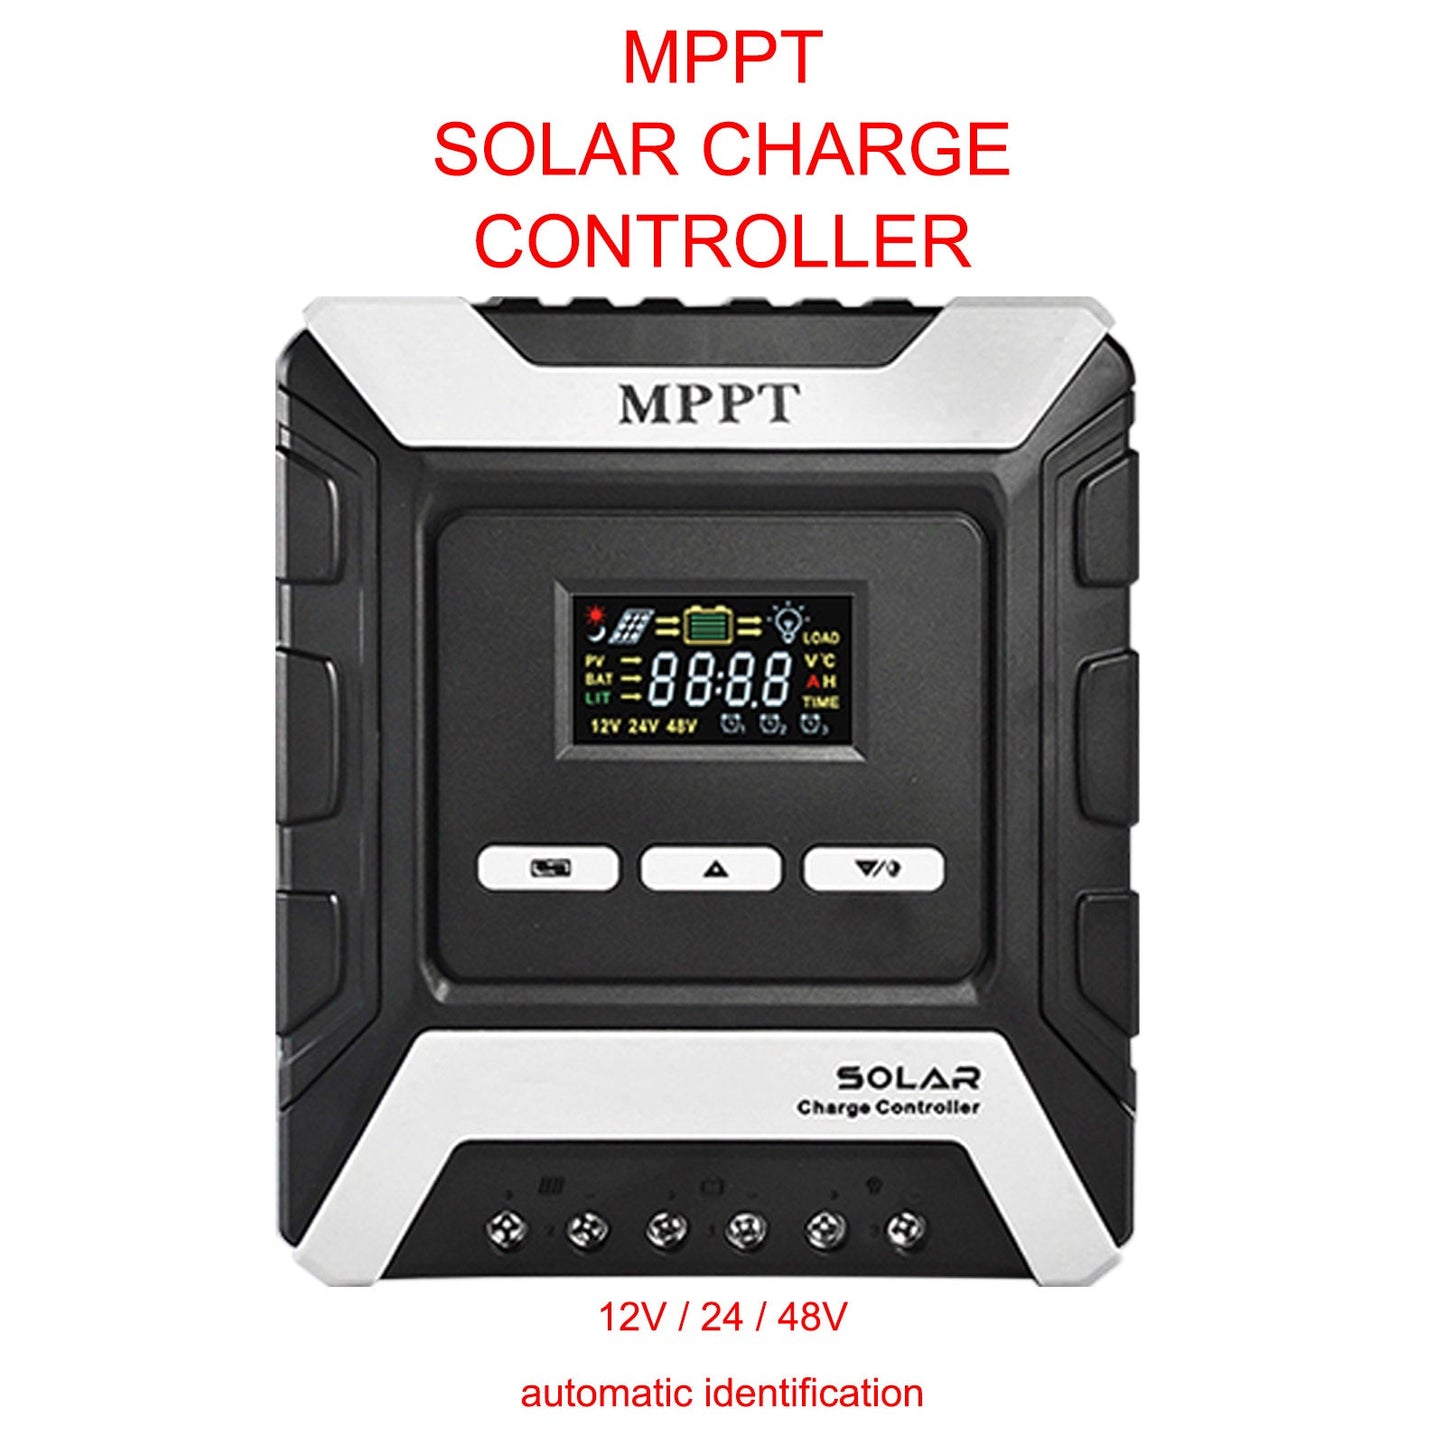 12/24/48V 20A MPPT panneau de contrôleur de charge solaire régulateur de batterie double USB